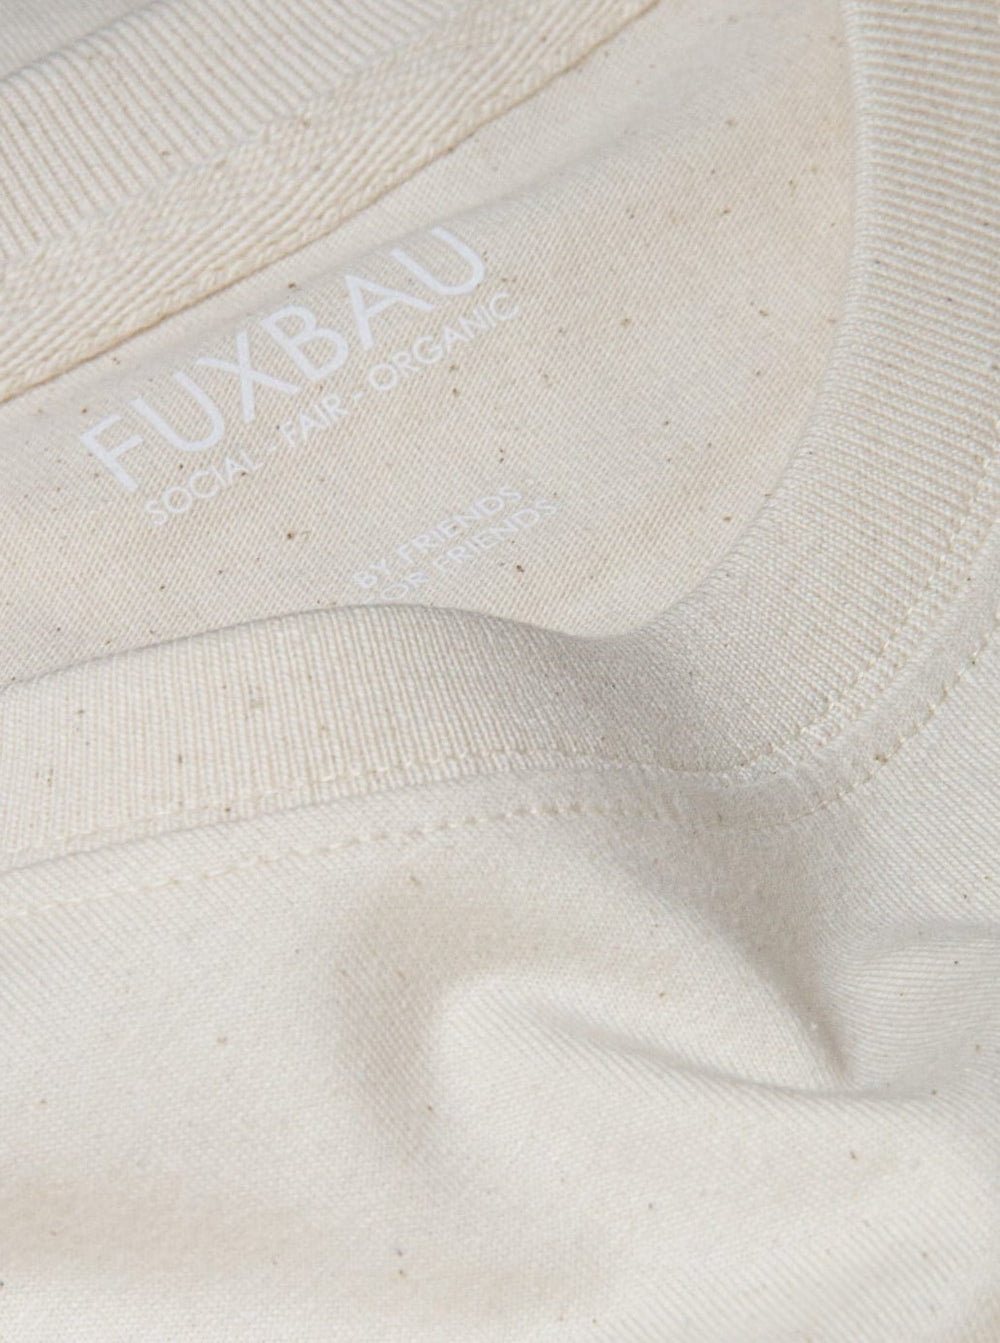 qualitiativ hochwertig, preiswert und nachhaltiges Basic T-Shirt von FUXBAU, spare im Eco Pack.